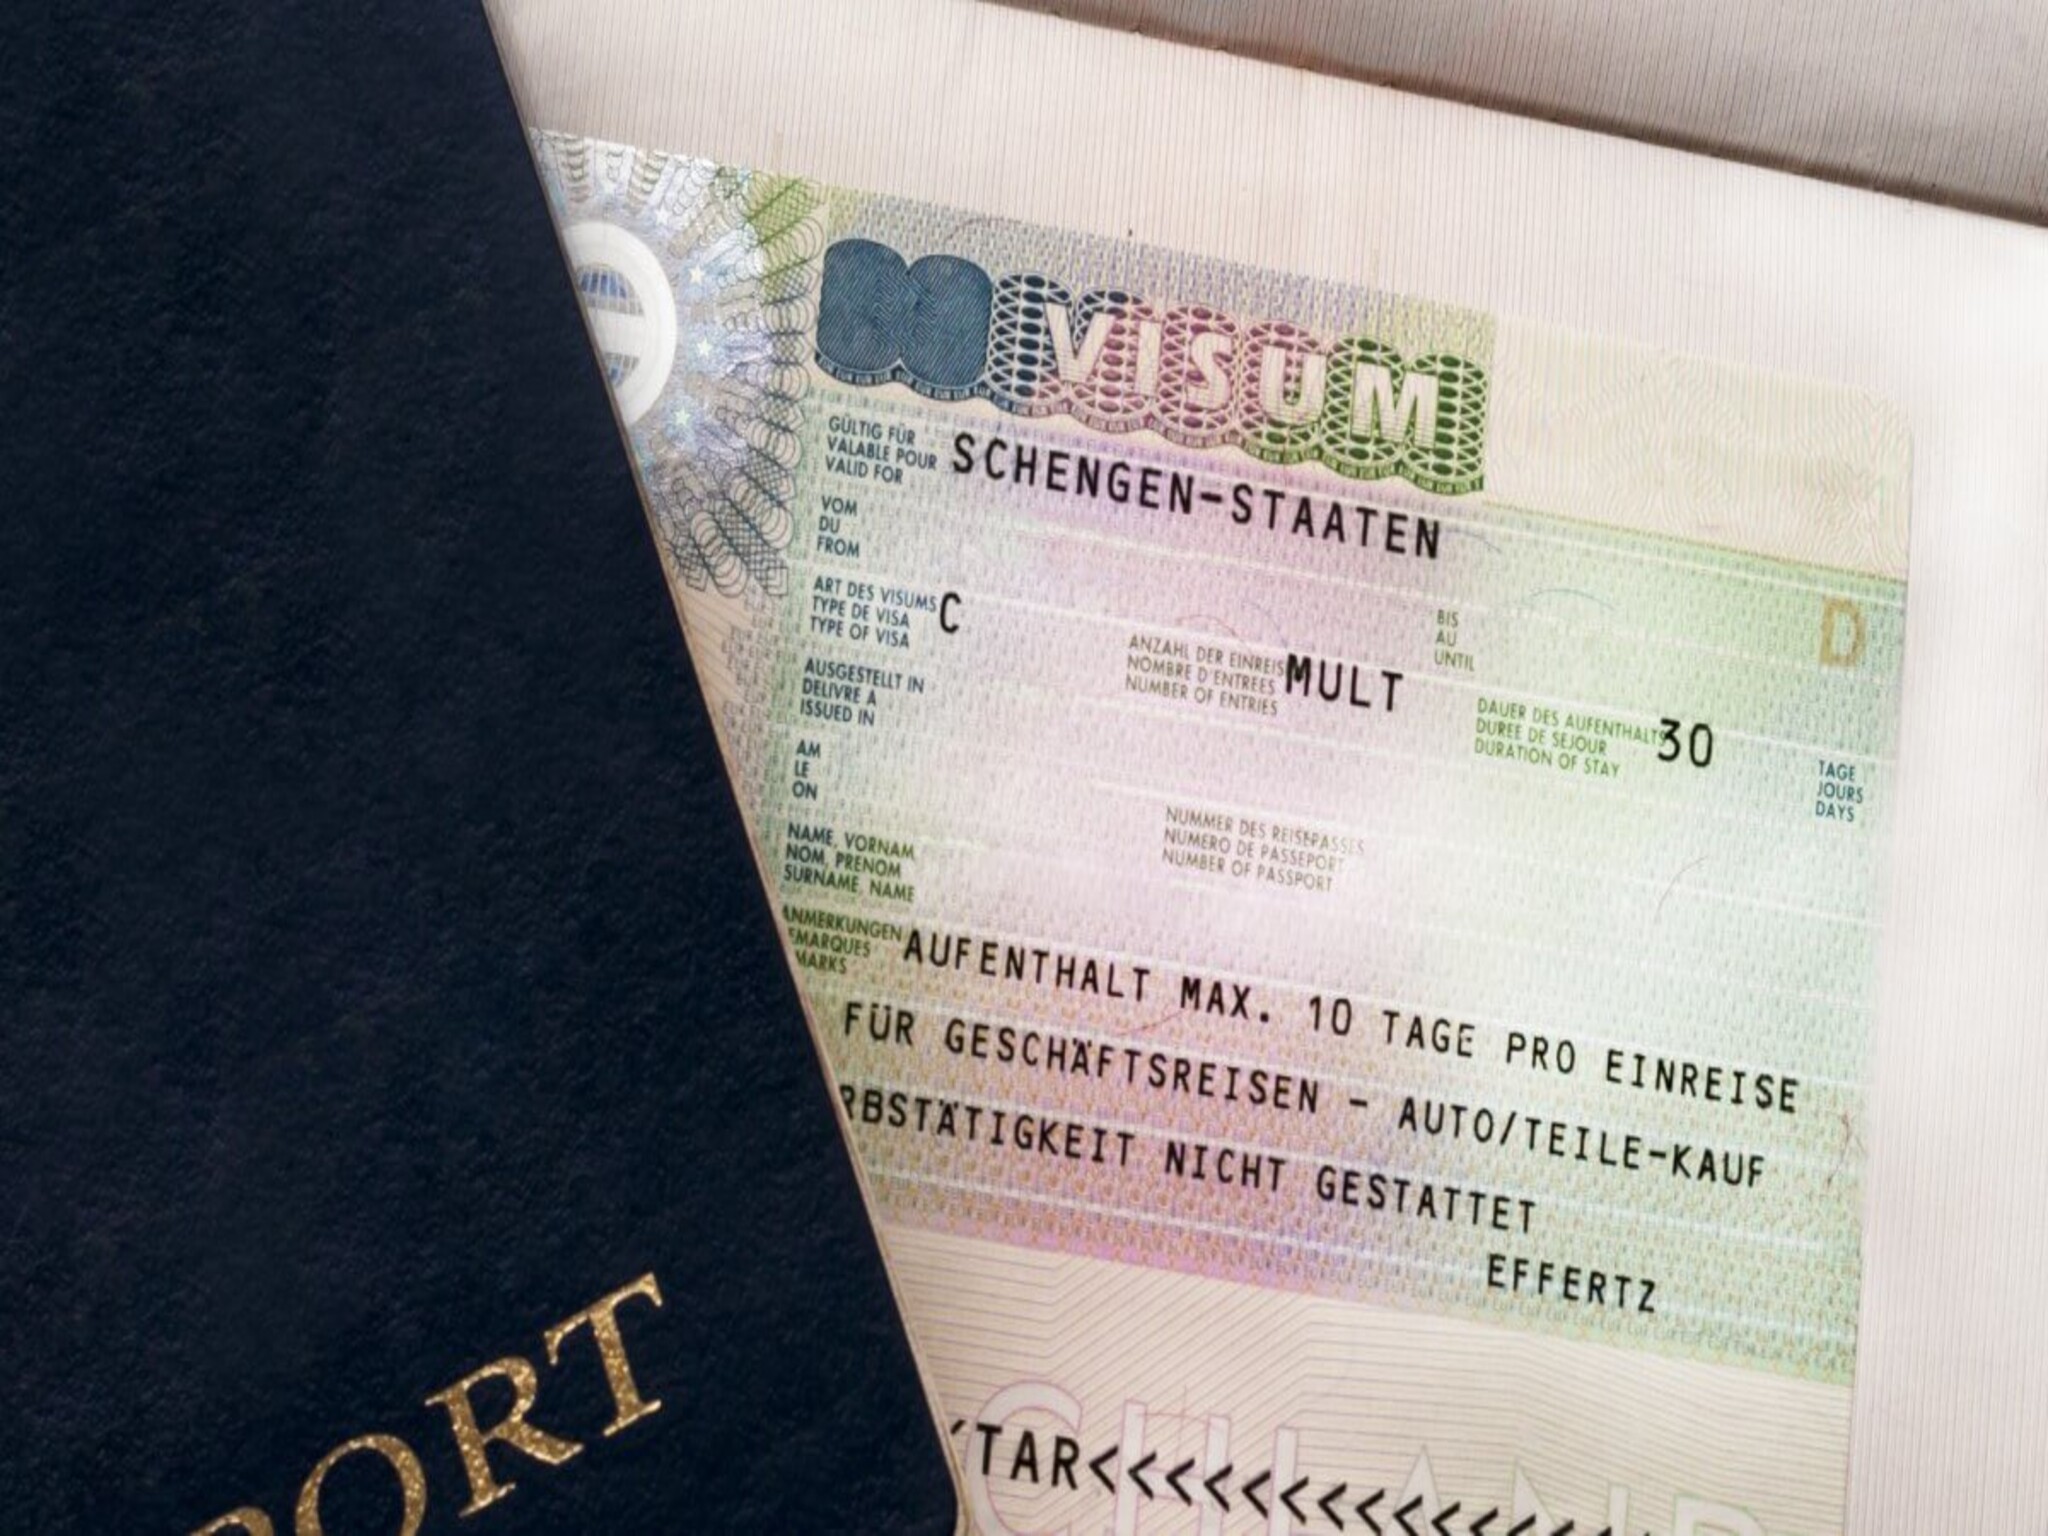 قواعد تأشيرة شينغن الجديدة تسمح بالسفر إلى ٢٩ دولة أوروبية